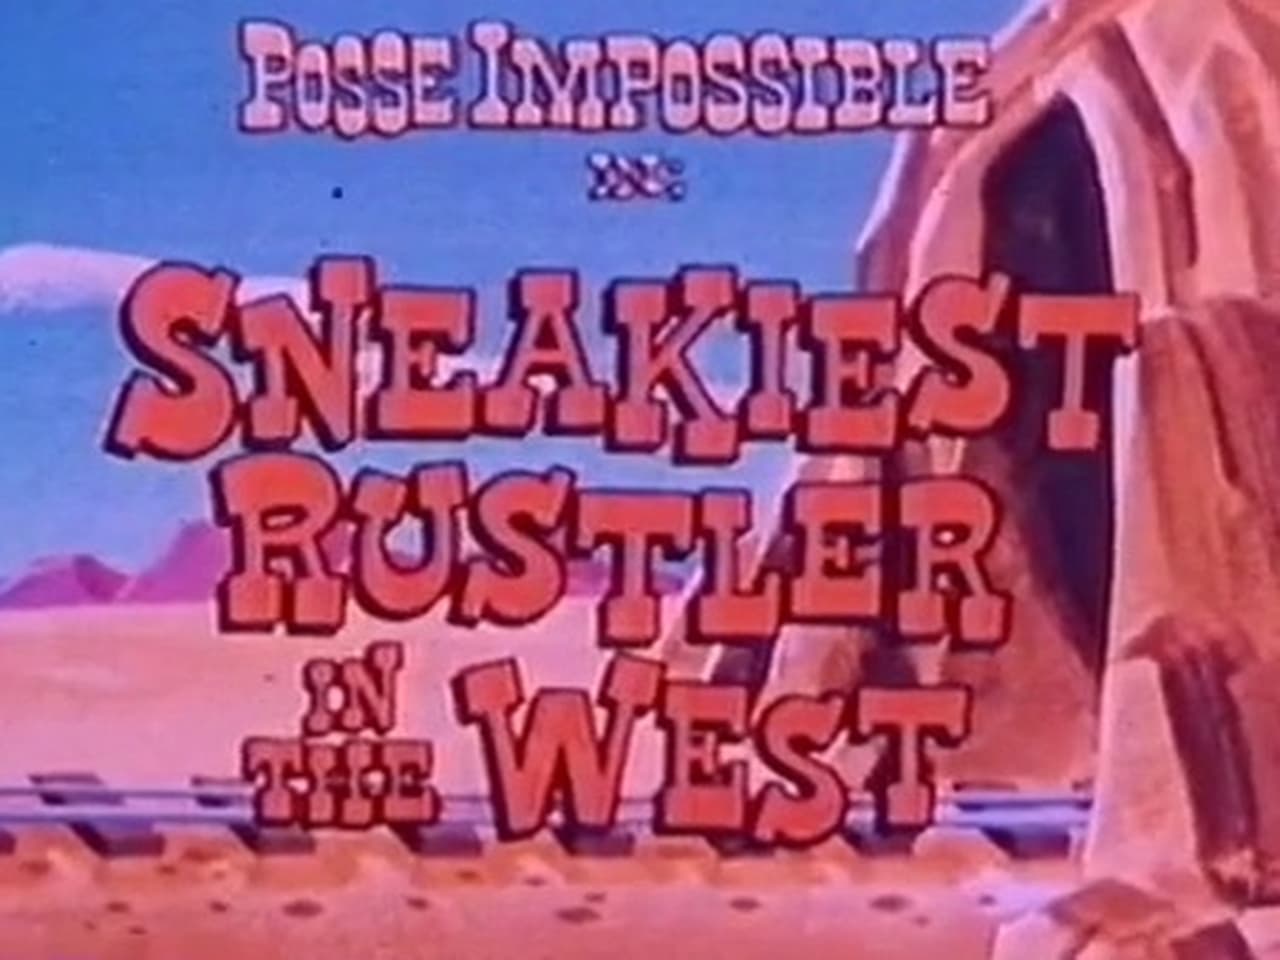 The Sneakiest Rustler in the West